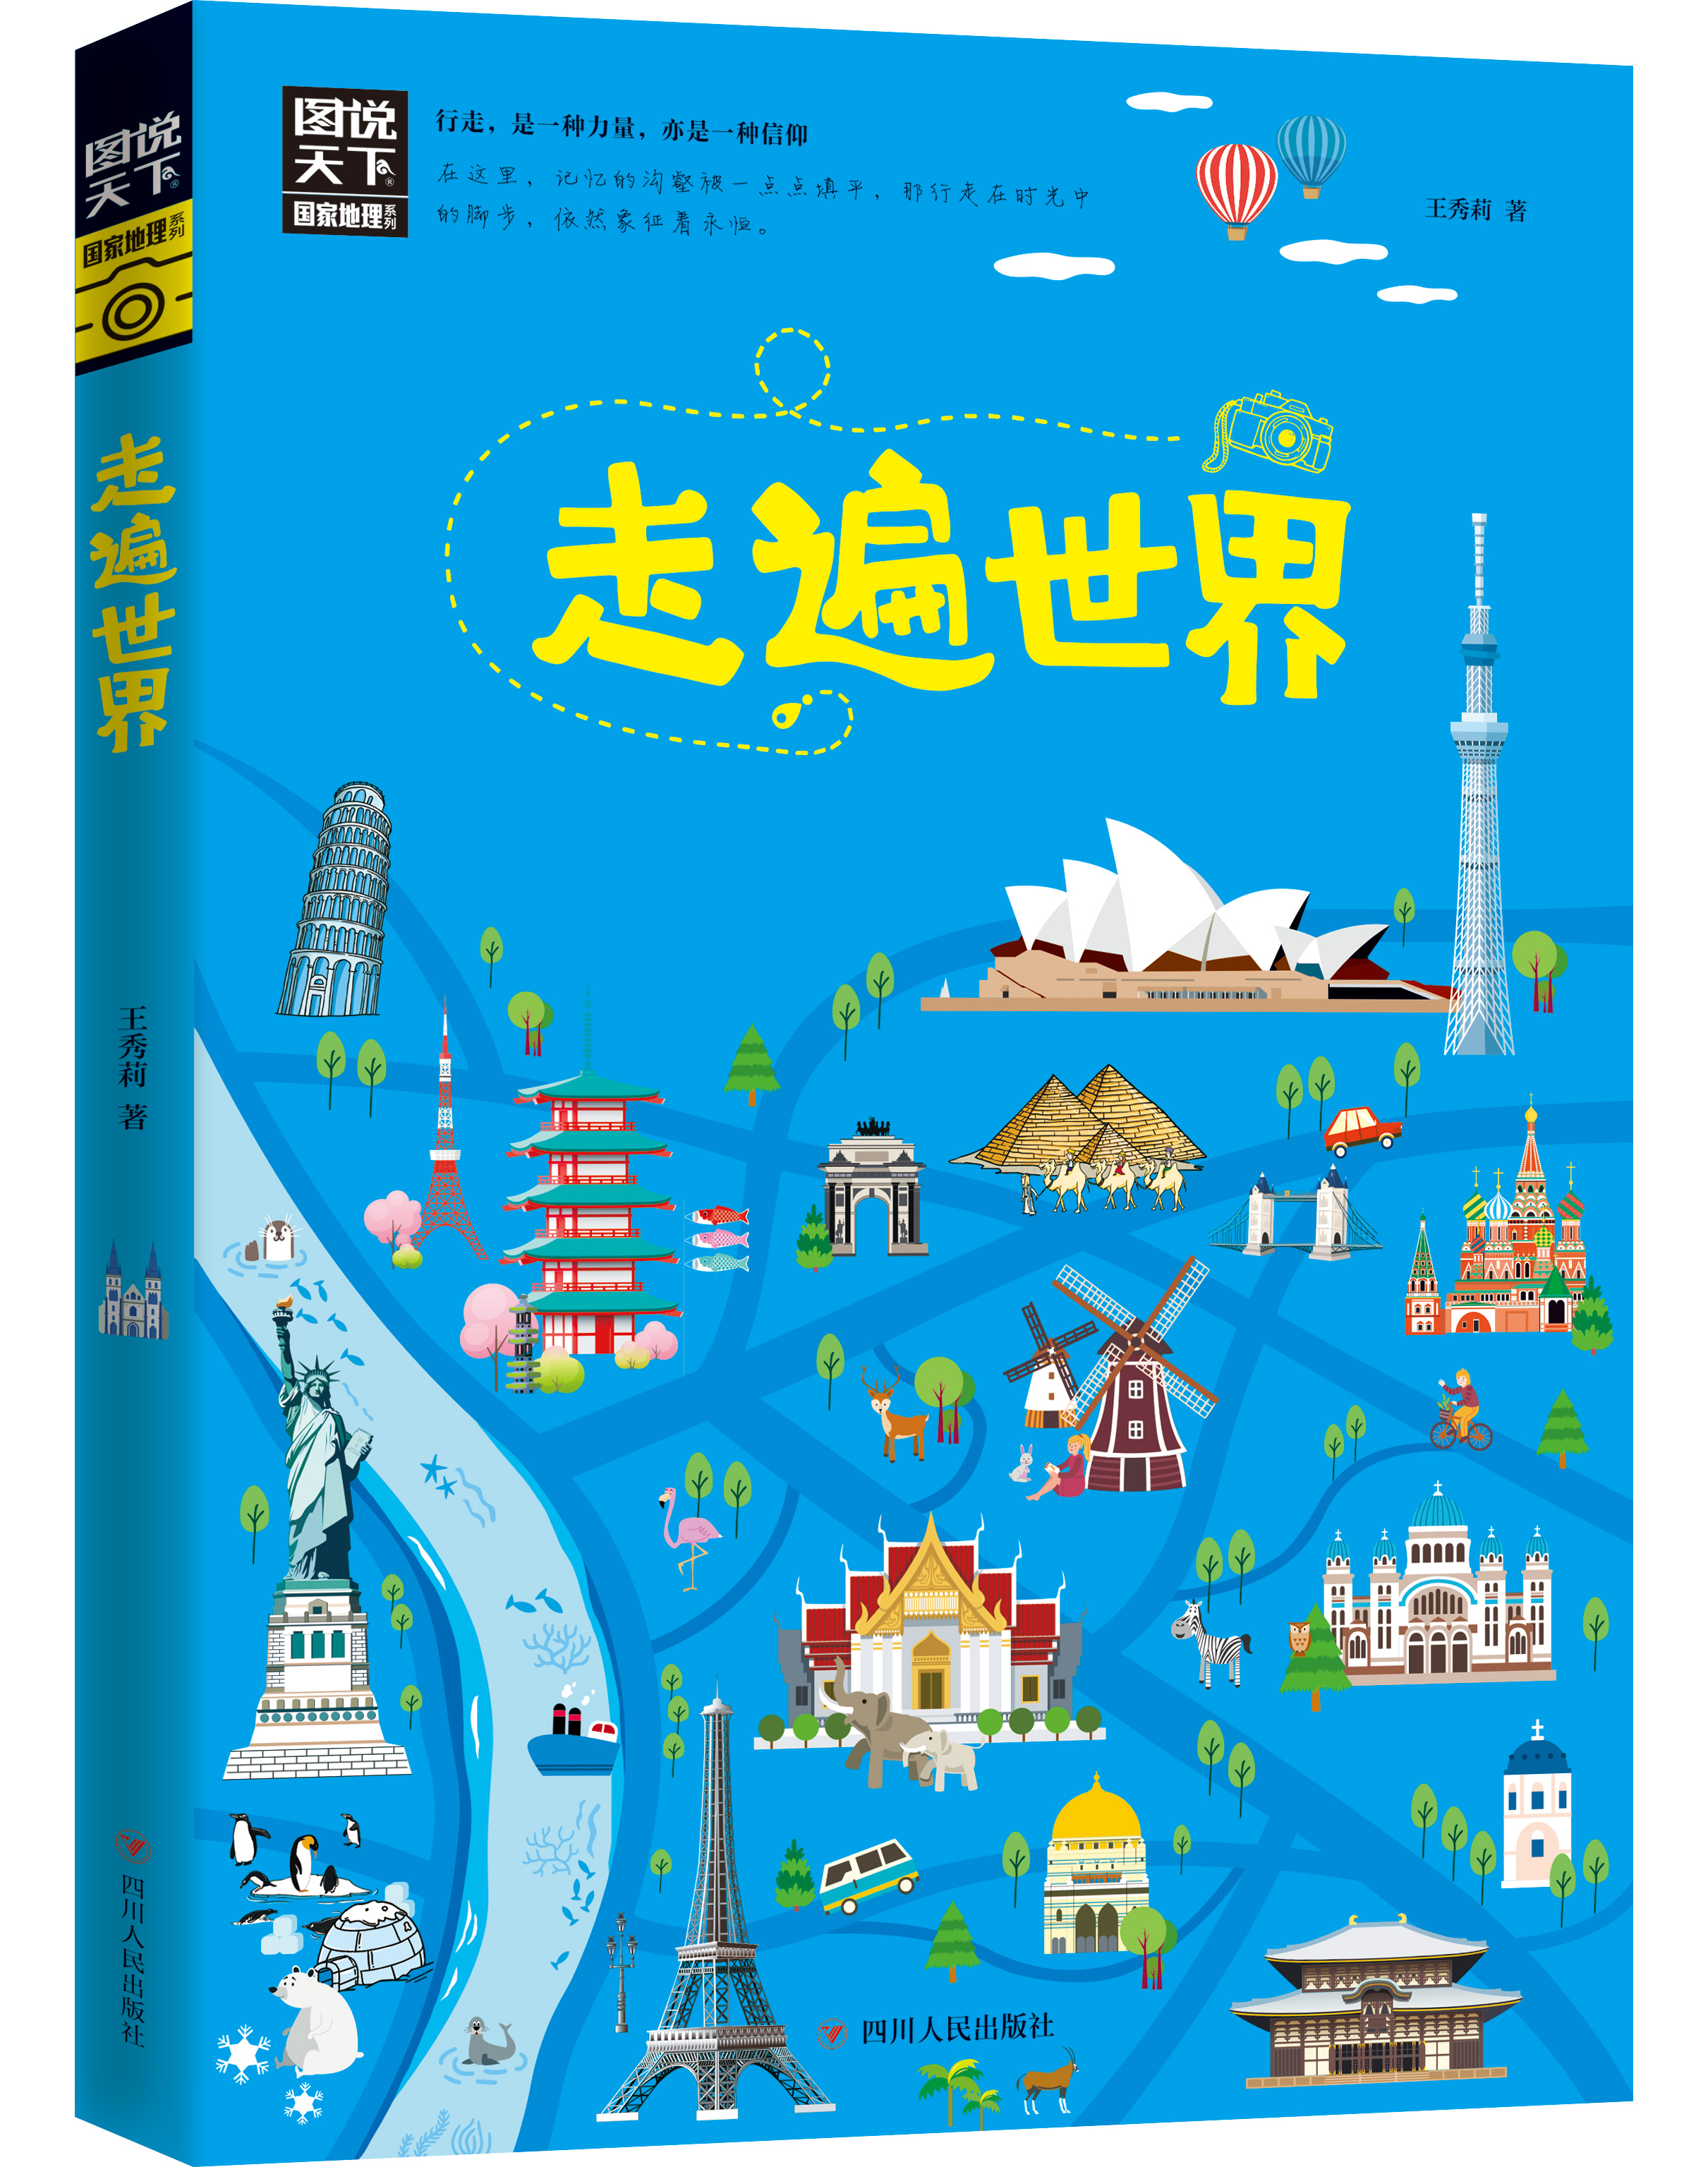 正版书籍 走遍世界 图说天下 寻梦之旅国家地理系列 5大洲 38个国家 近80个经典全球旅行地图 世界景观旅游指南